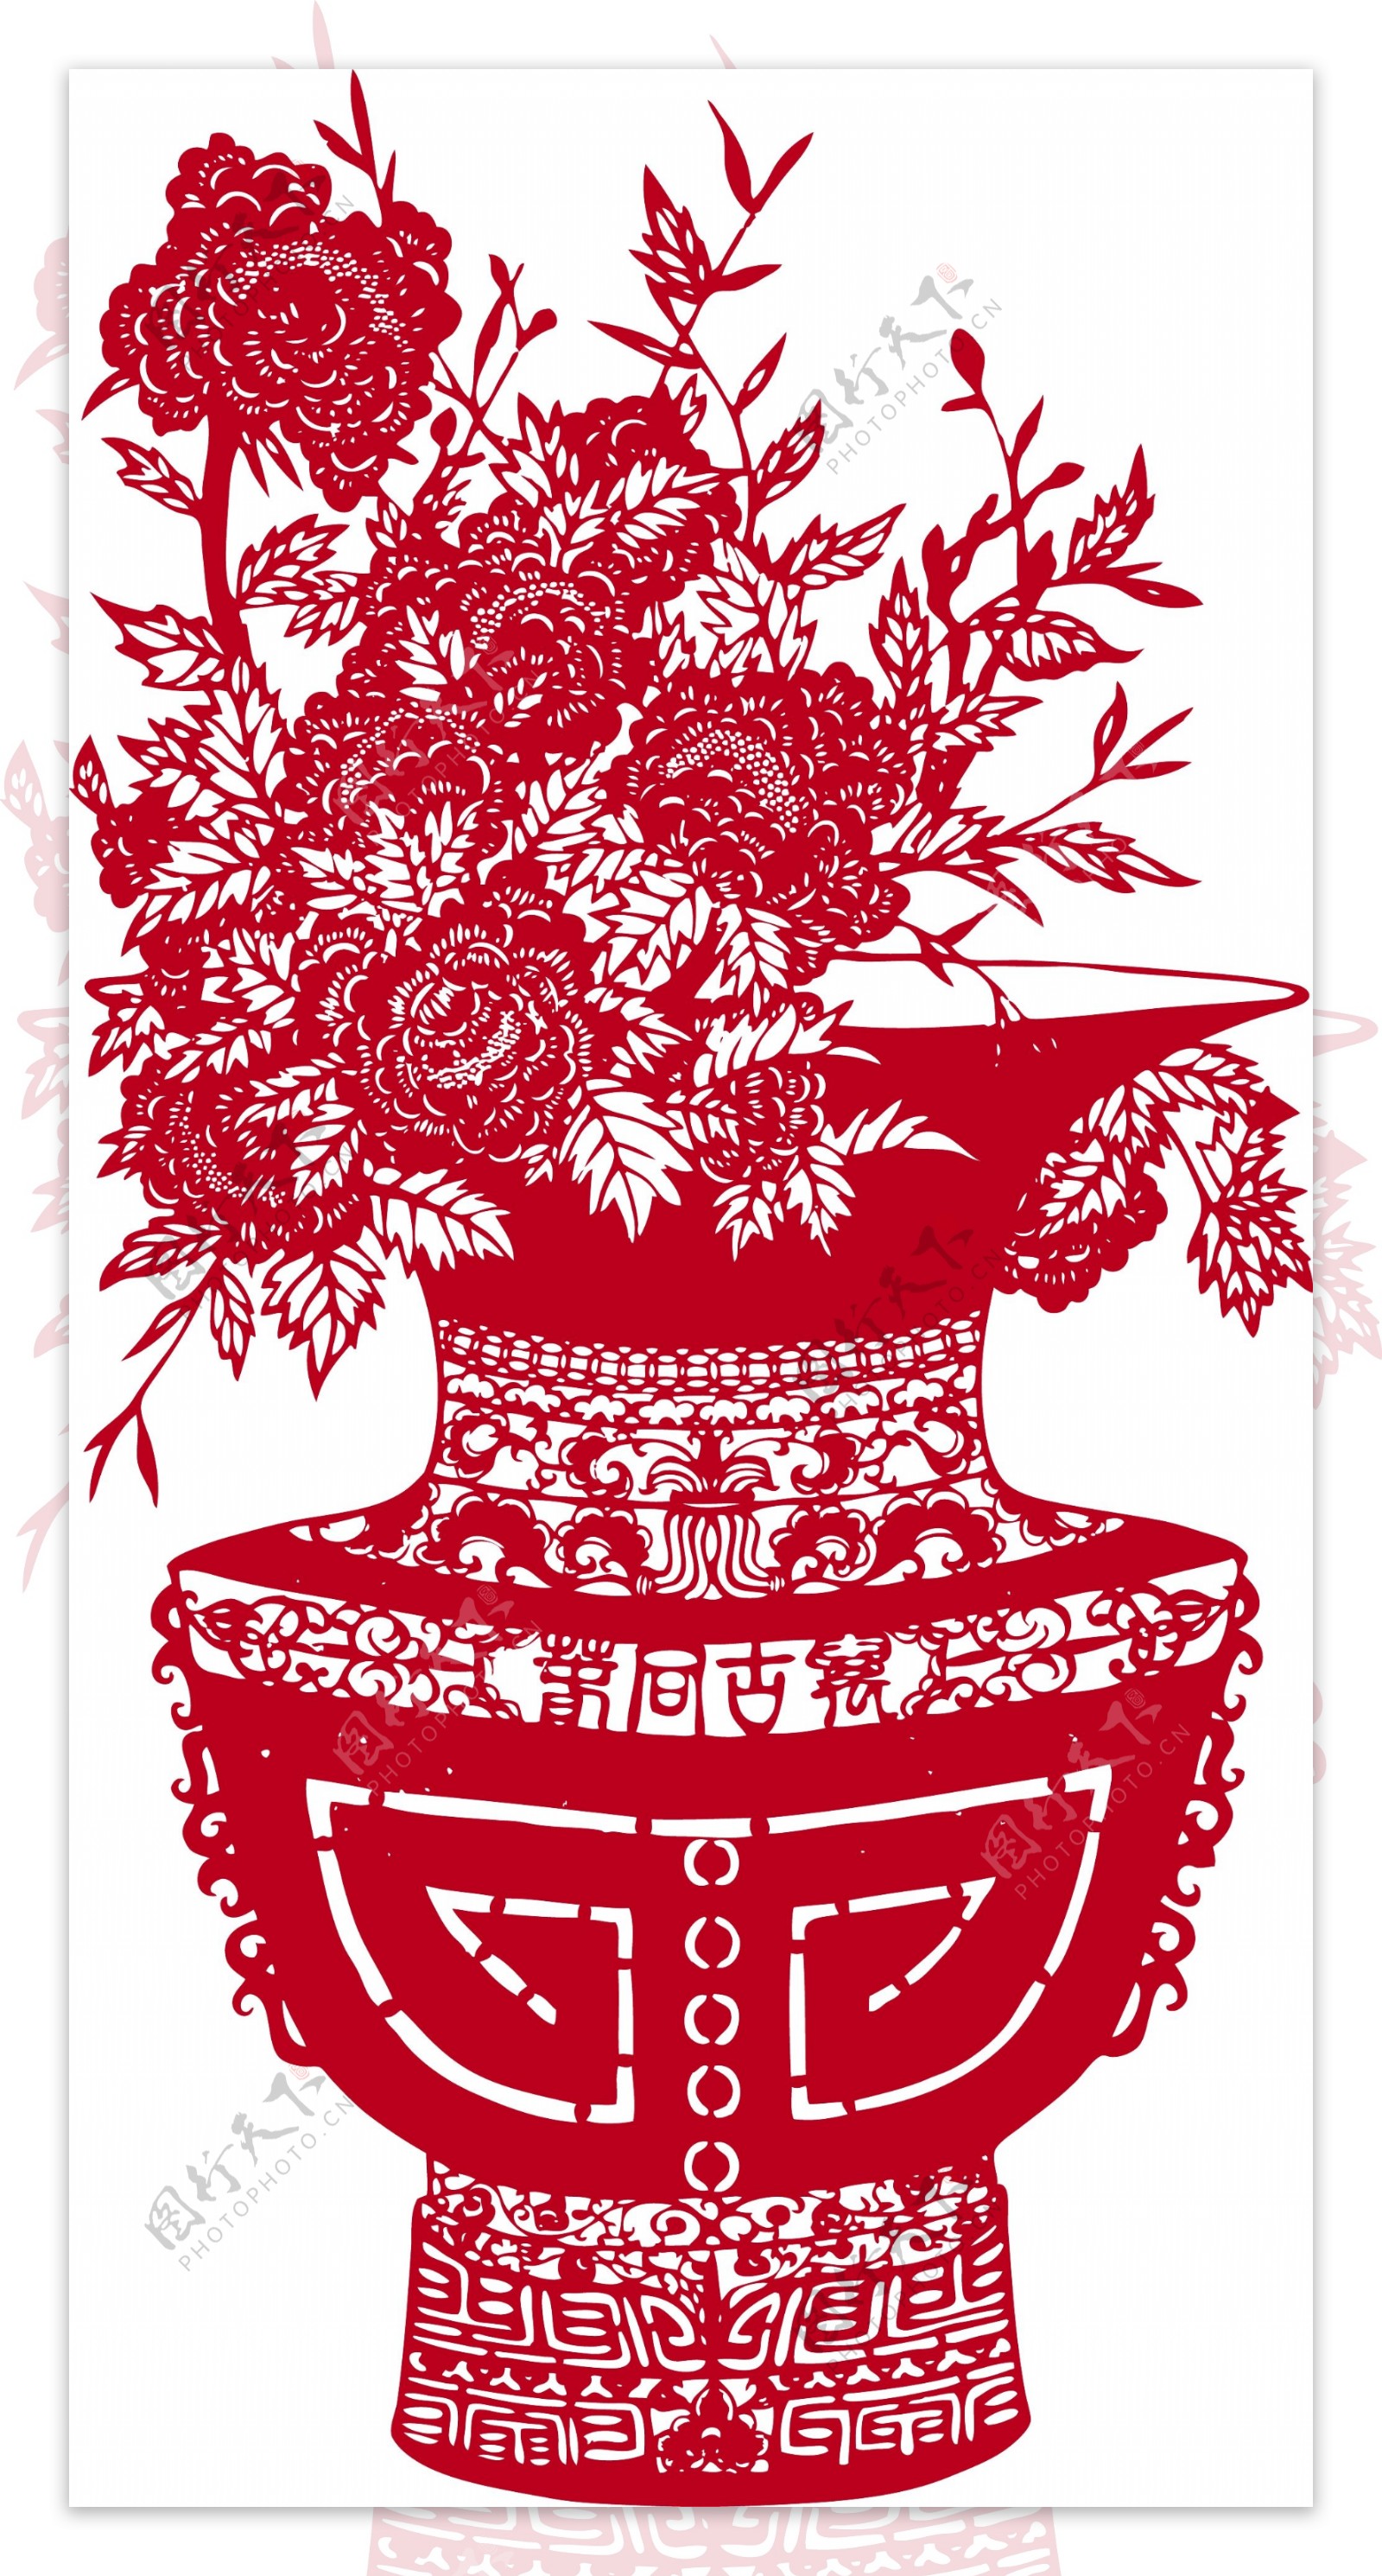 中华剪纸艺术花瓶图案